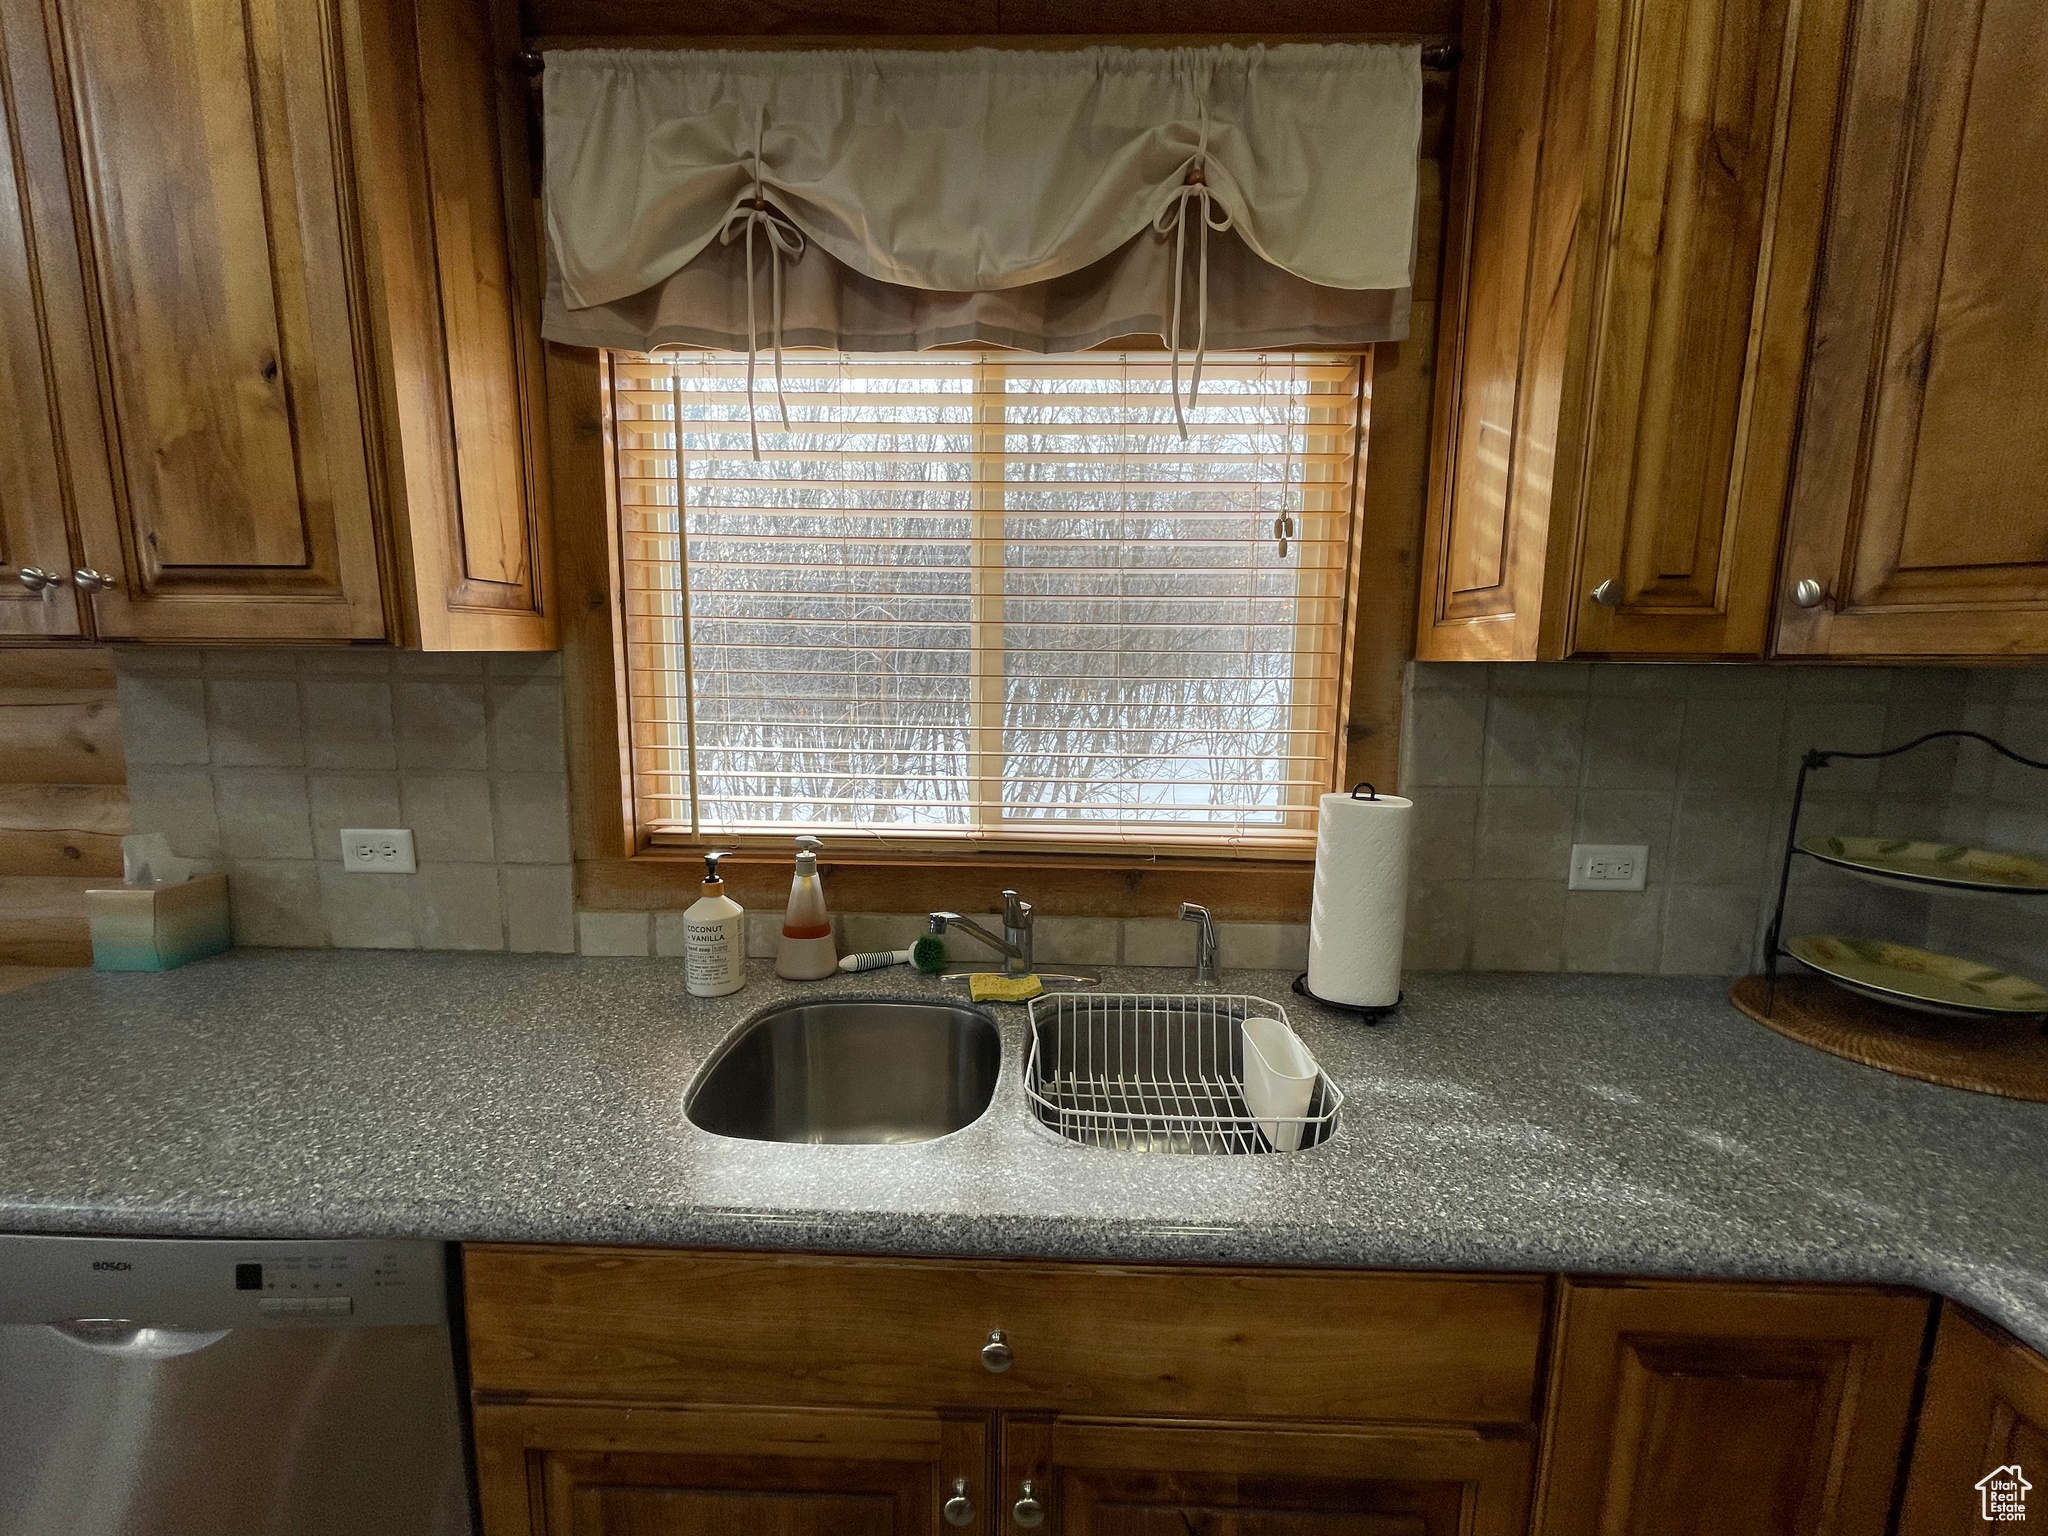 Kitchen featuring tasteful backsplash, dishwasher, and sink